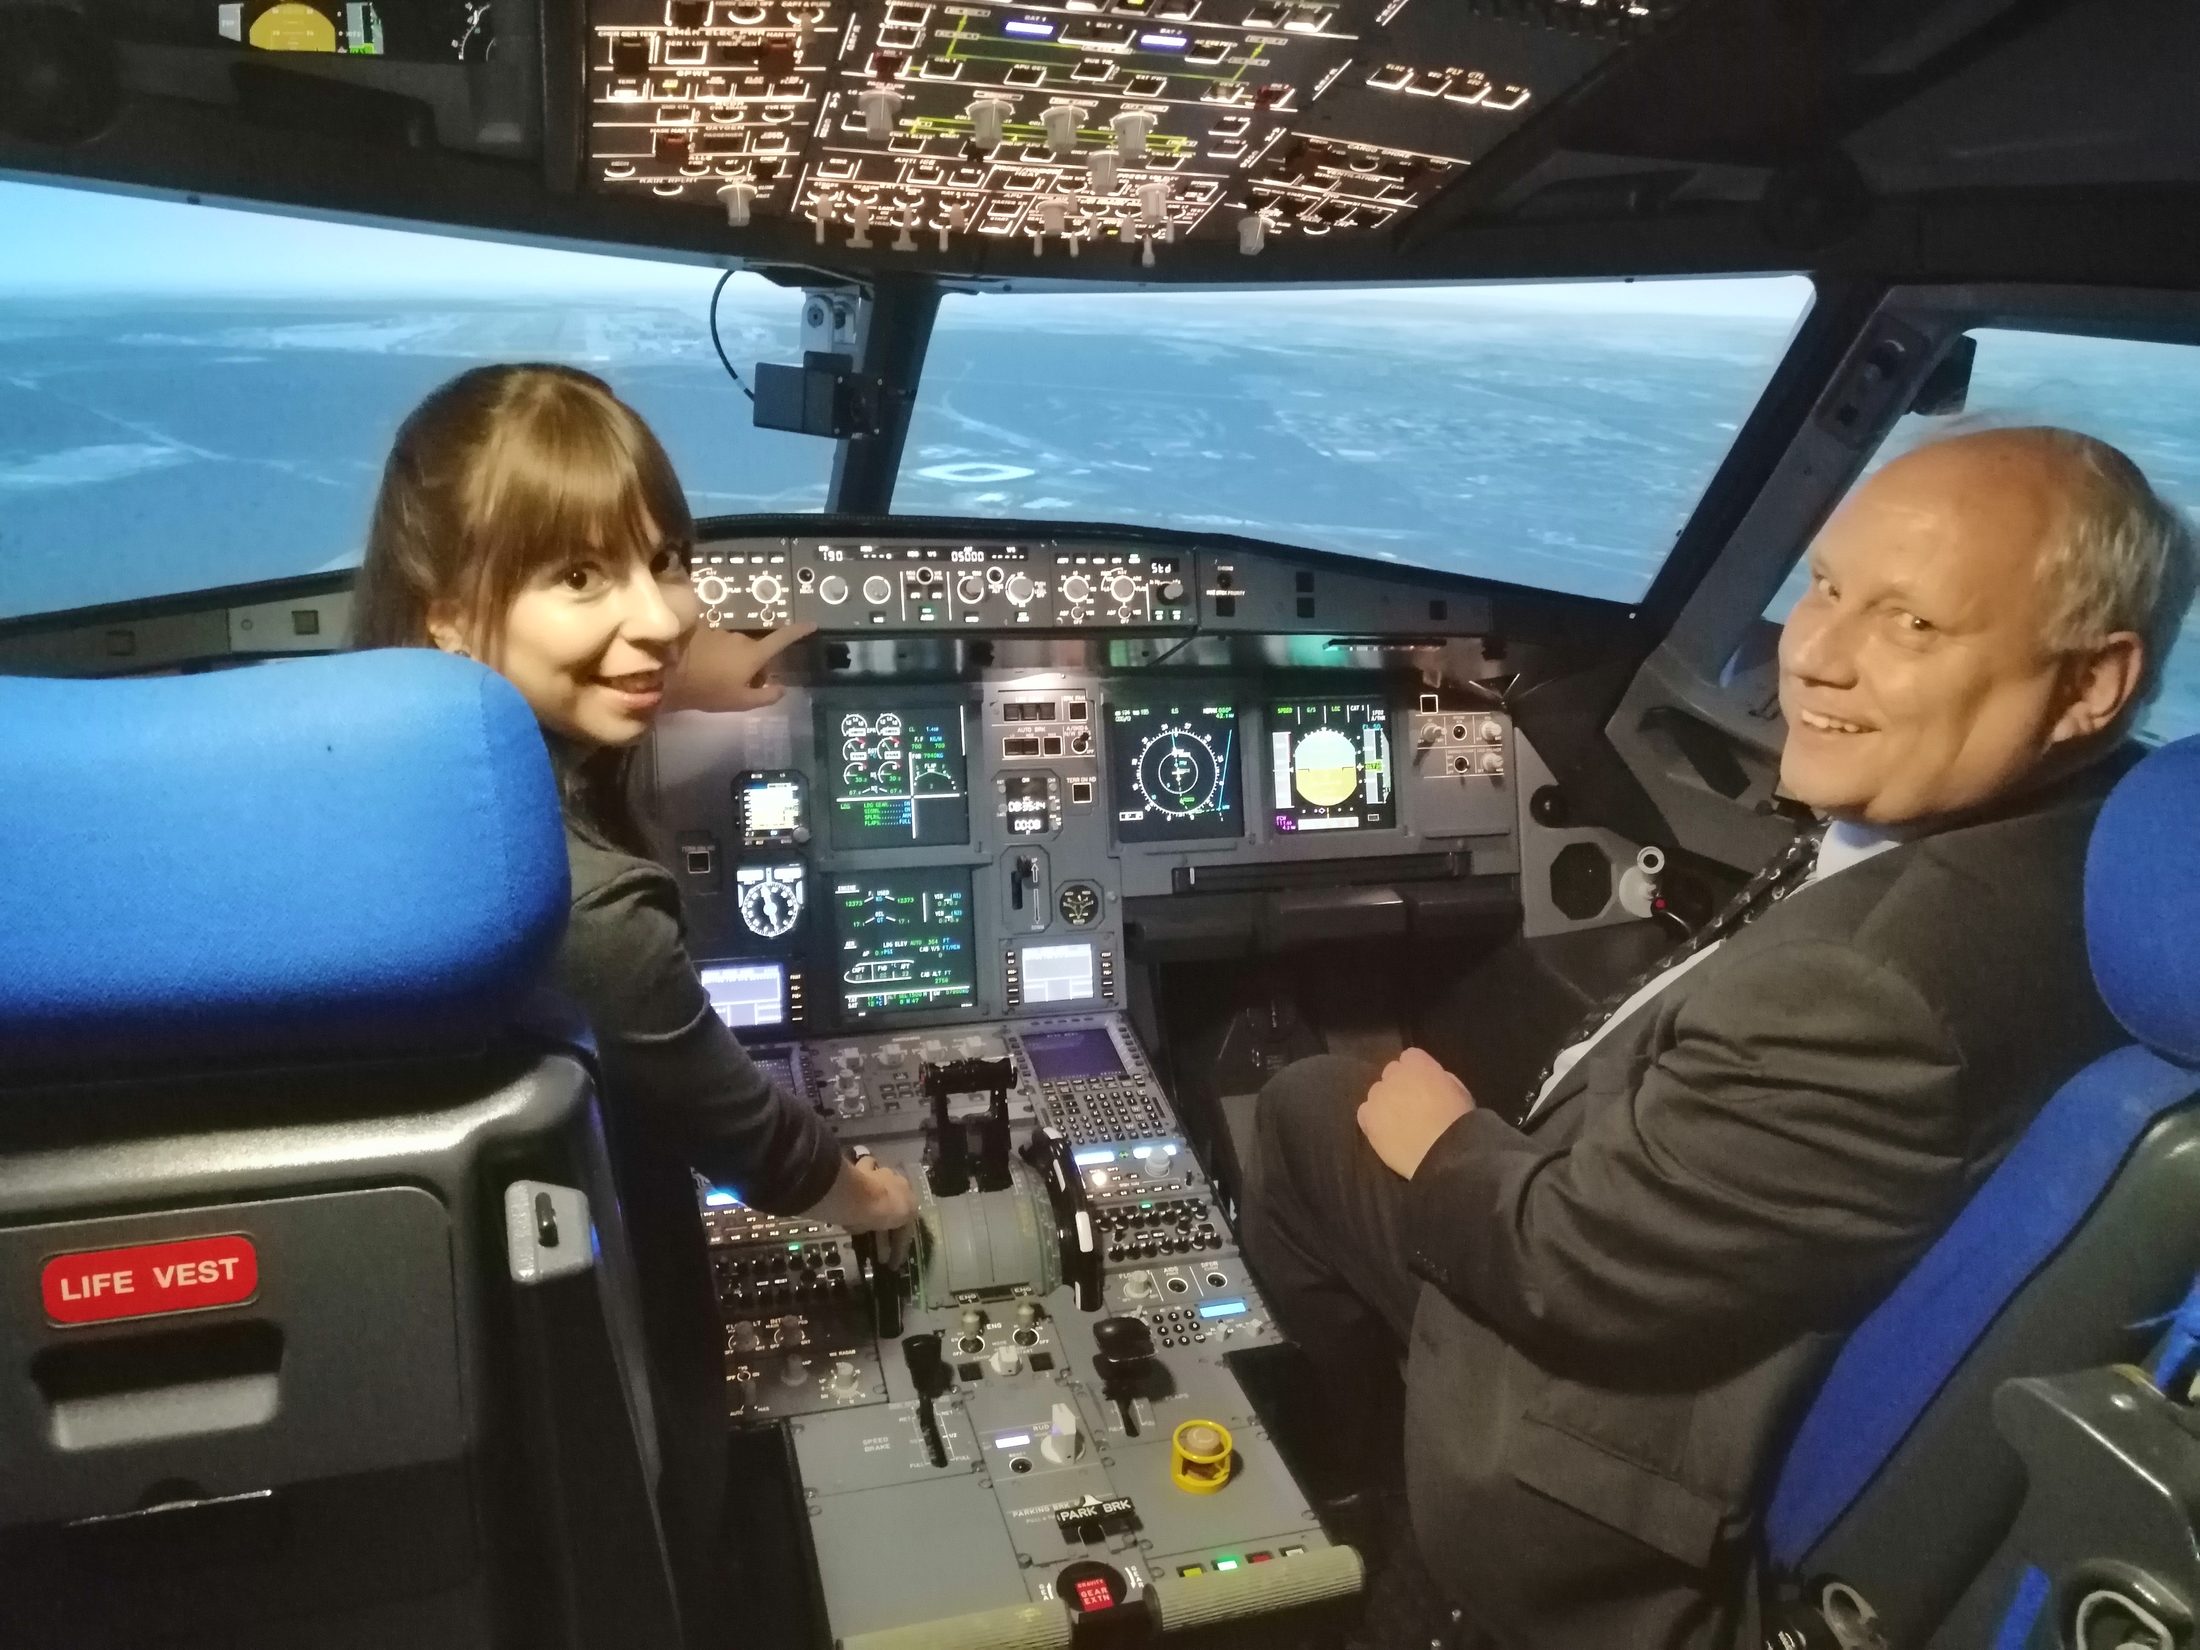 Jennifer Haacke als Pilotin im Airbus-Cockpit beim Landeanflug. Ihr Co-Pilot ist Prof. Dr. Joachim Block. Ihre große Gelassenheit hat nur einen Grund: Es ist zum Glück nur eine Simulation. Aufregend ist es trotzdem. (Wird bei Klick vergrößert)